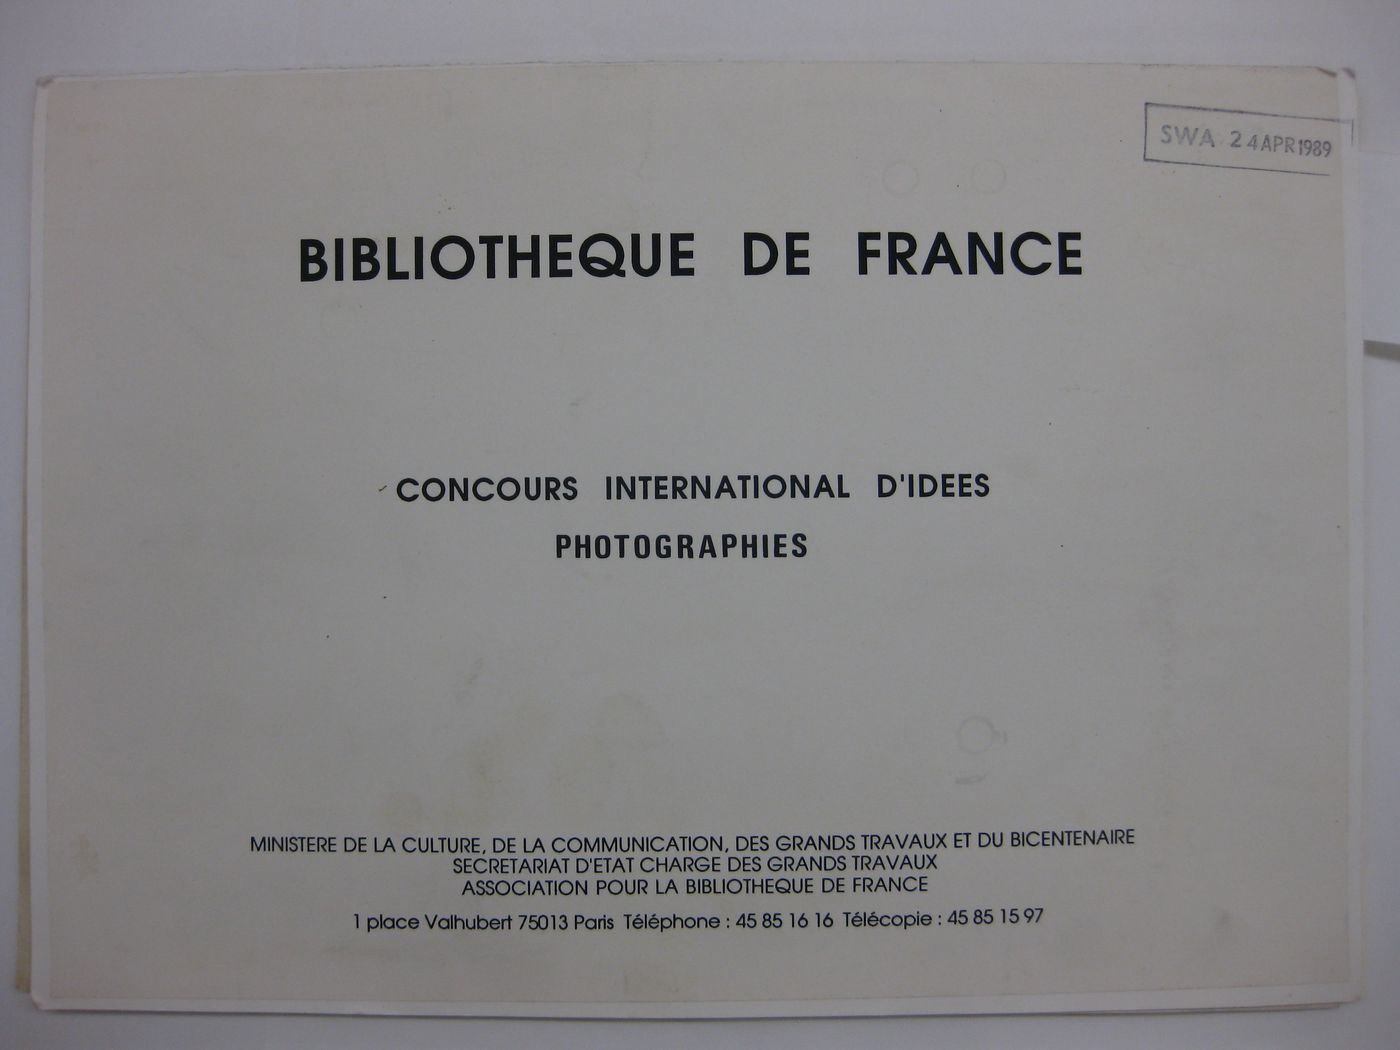 Bibliothèque de France concours international d'idées: Photographies